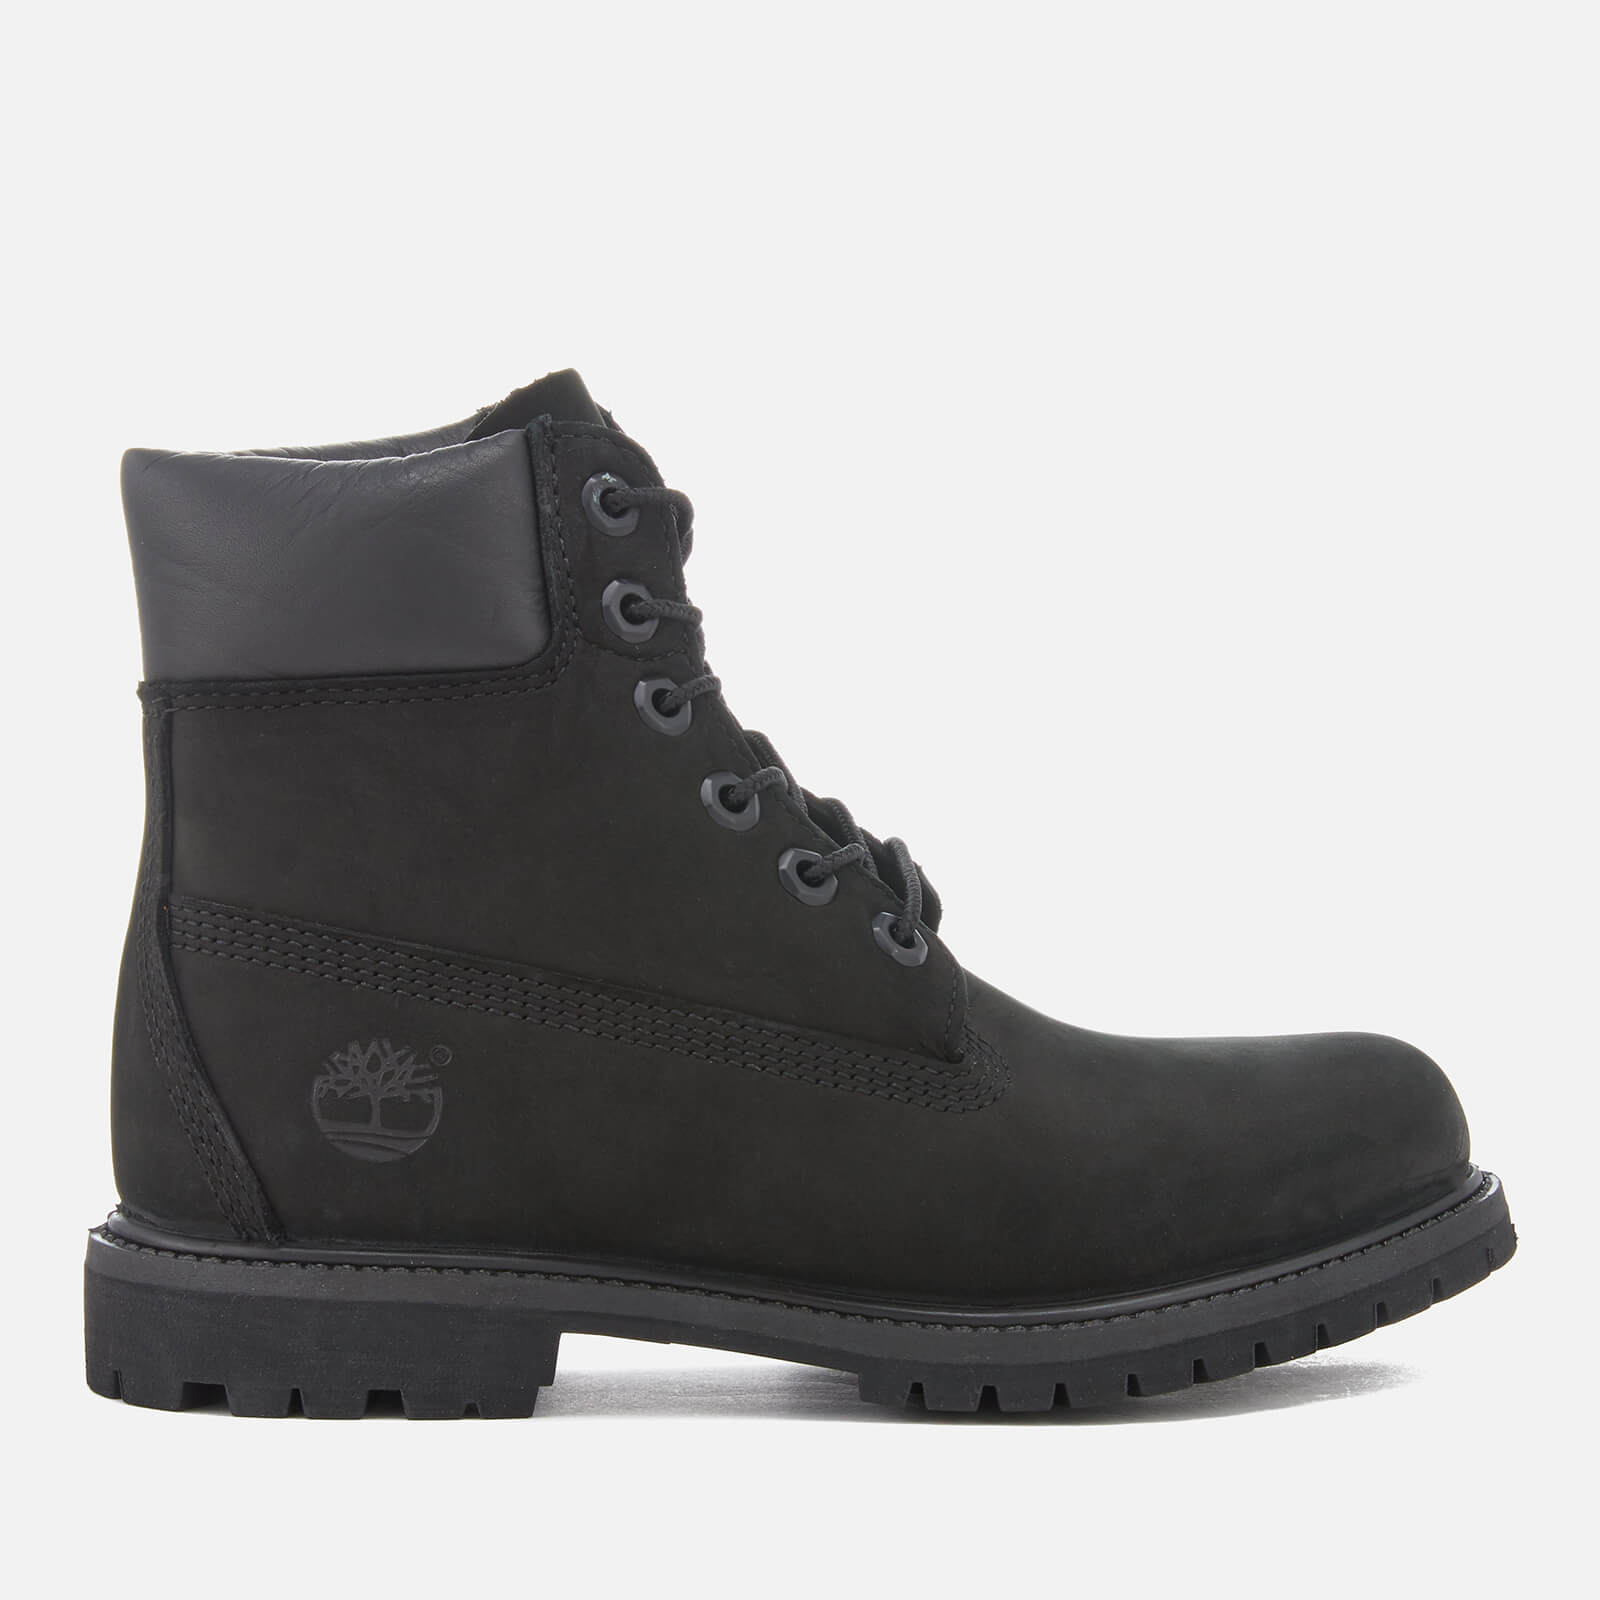 Timberland Women’s 6 Inch Nubuck Premium Boots - Black